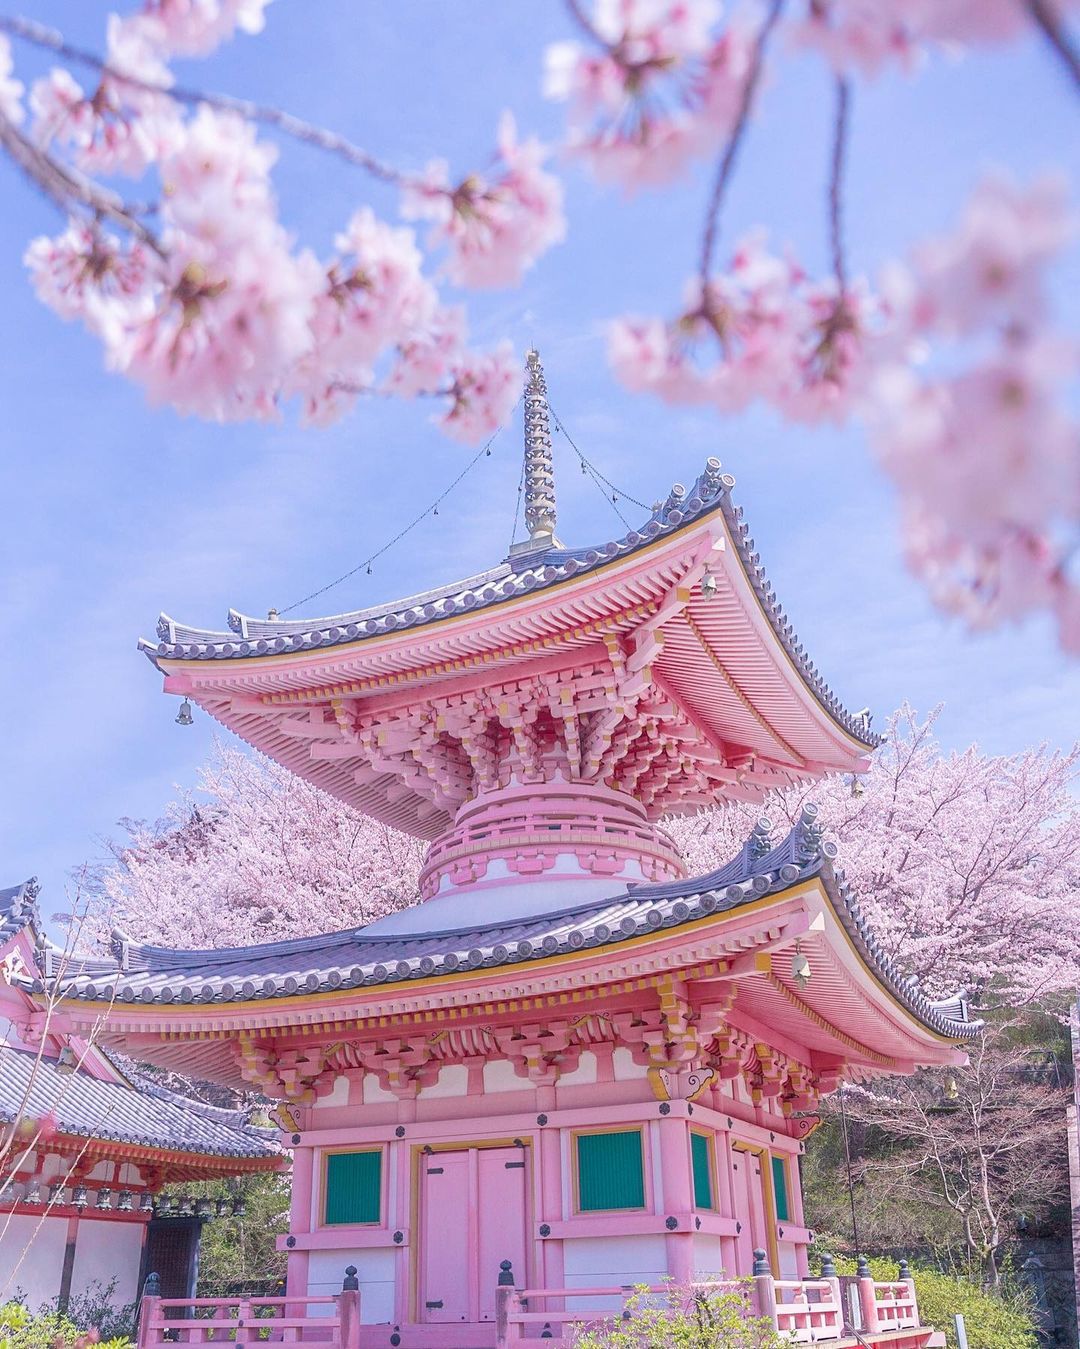 メイン画像 今最も映える春の絶景はこれ Retrip日本の今週のおすすめスポット7選 Retrip リトリップ